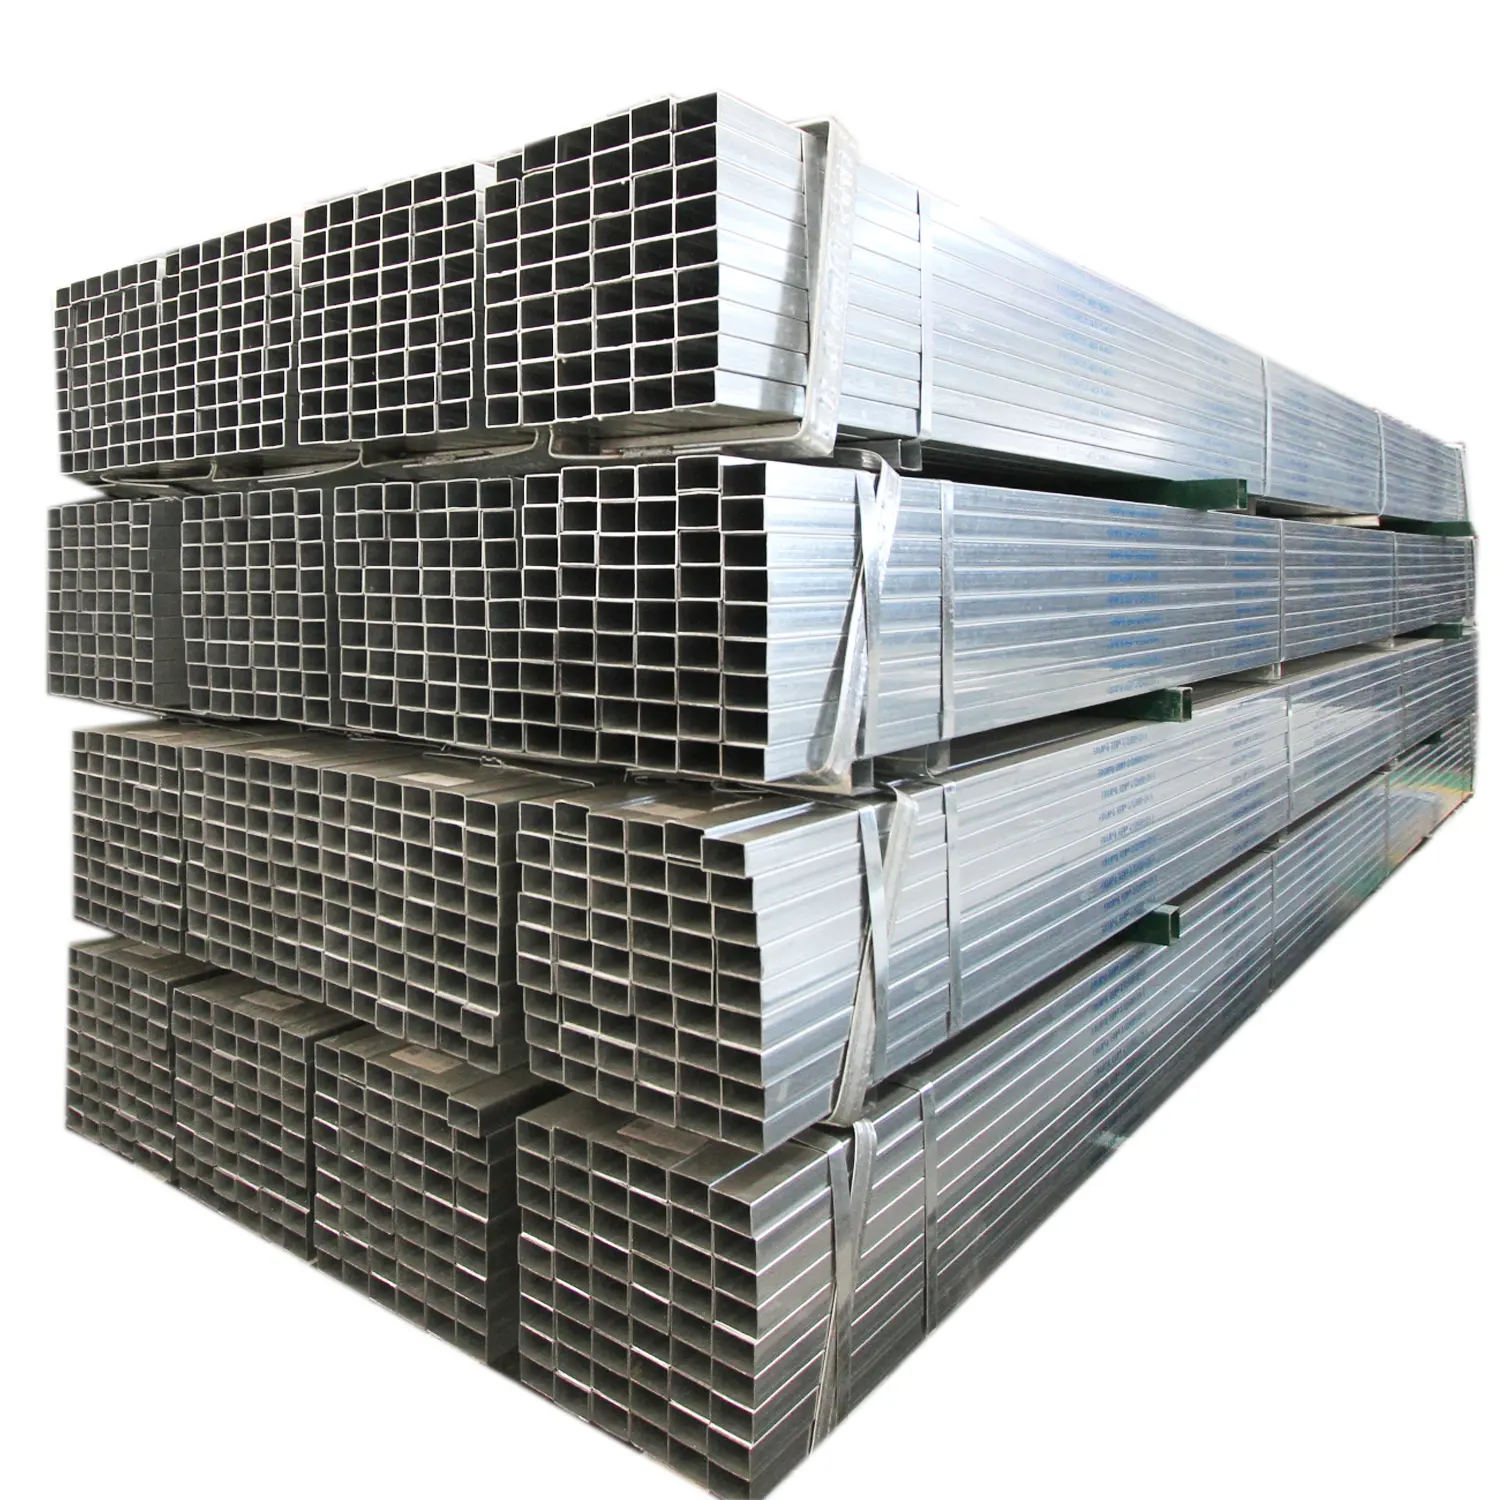 Yüksek kaliteli galvanizli çelik kare ve dikdörtgen GI çelik borular standart boyutları galvanizli çelik boru